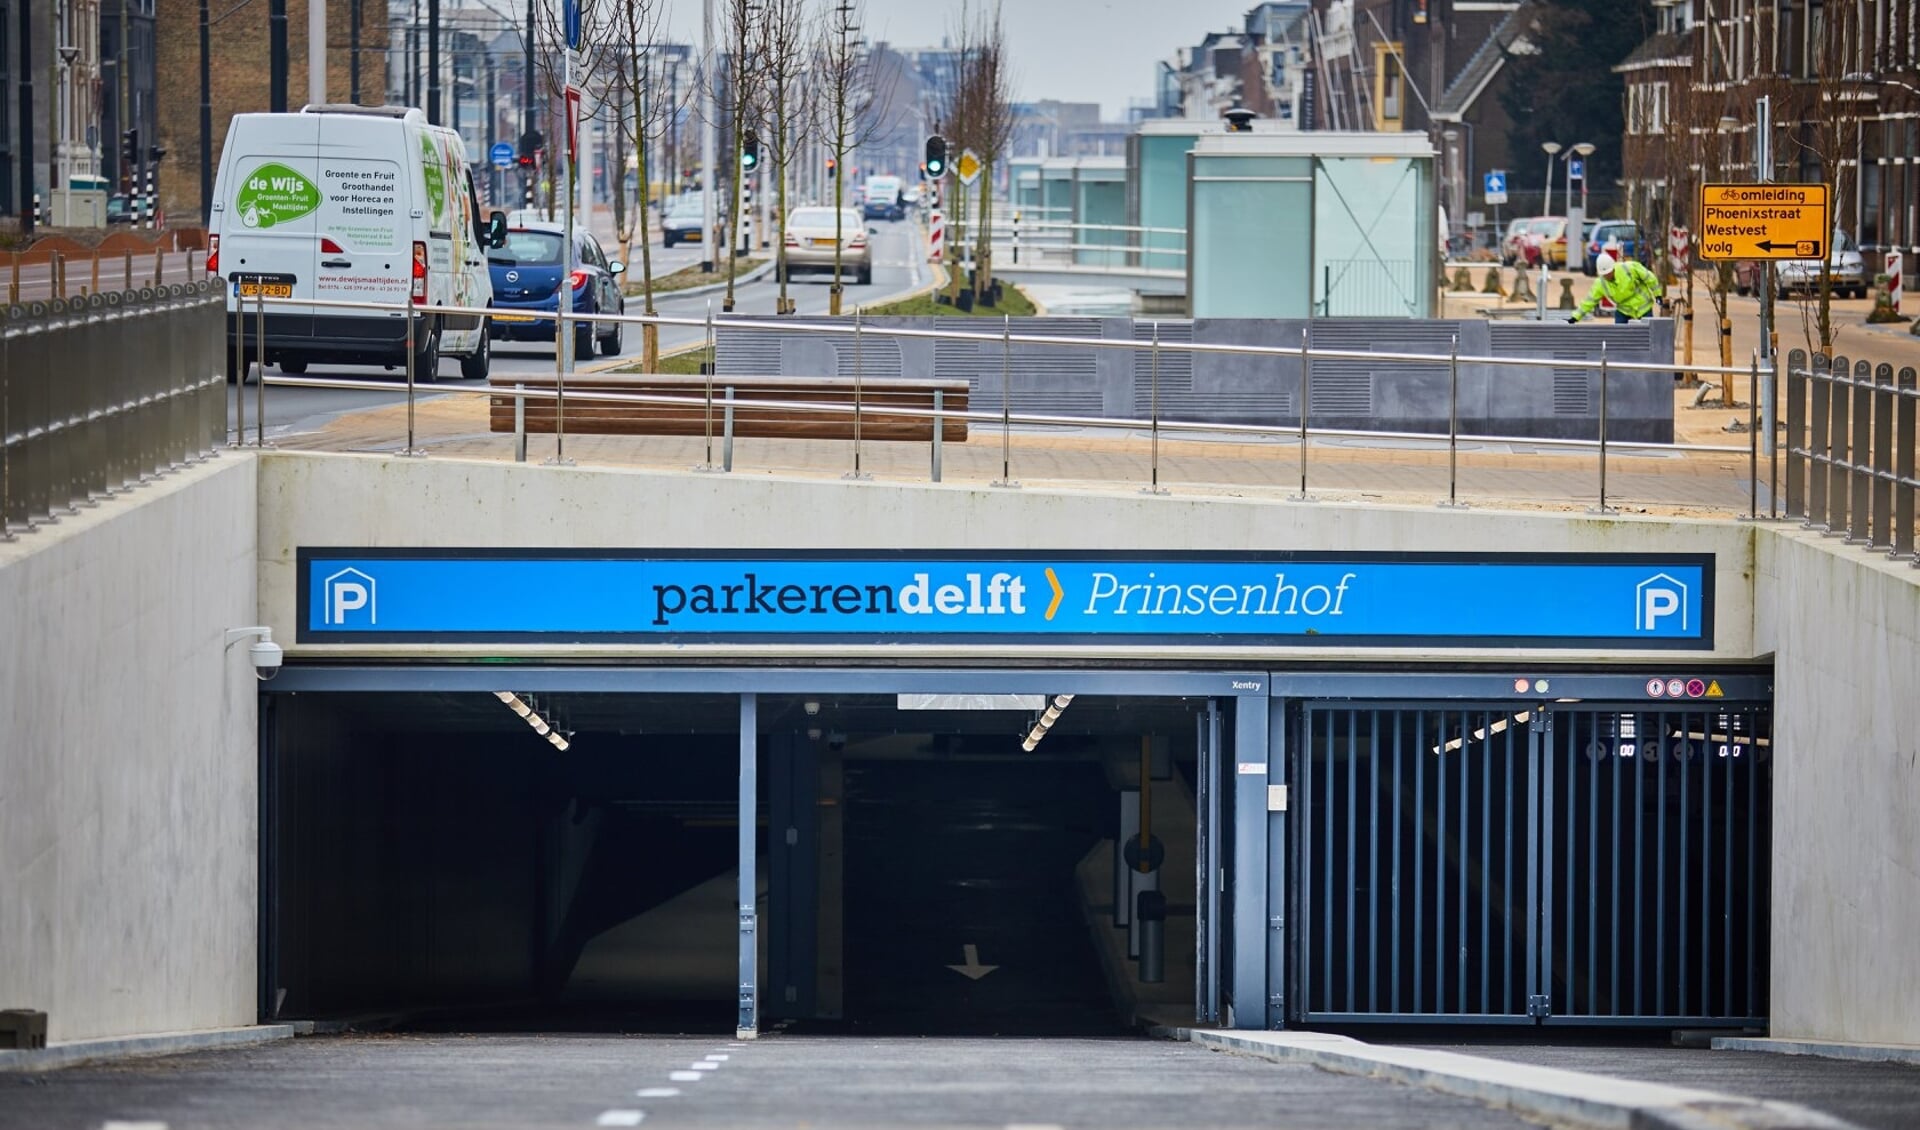 De parkeergarages in Delft laten veel lege plekken zien (foto: Koos Bommelé)